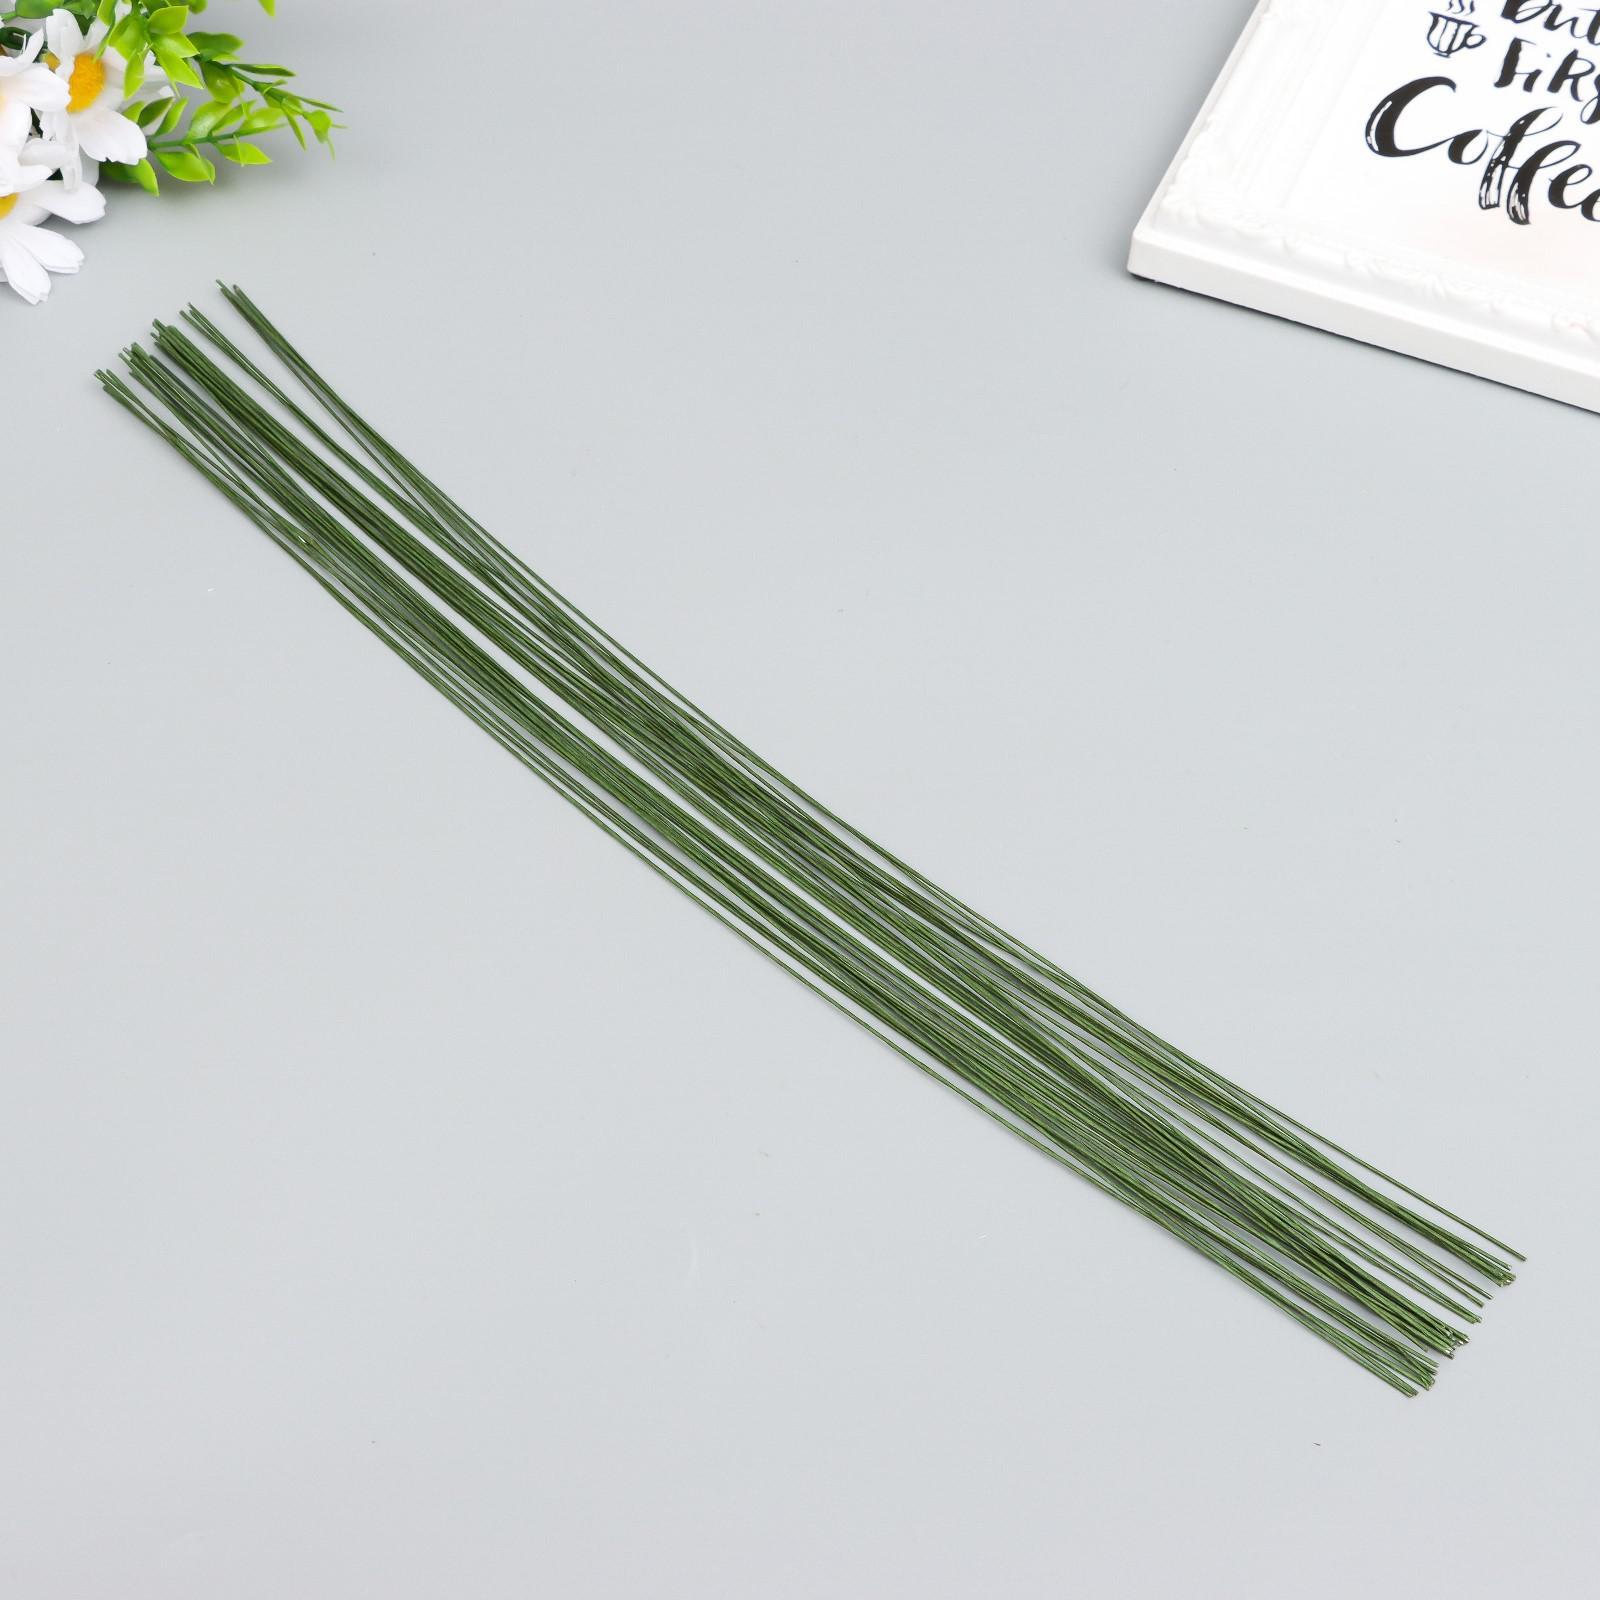 Проволока флористическая зеленая 1,6 мм 12 шт